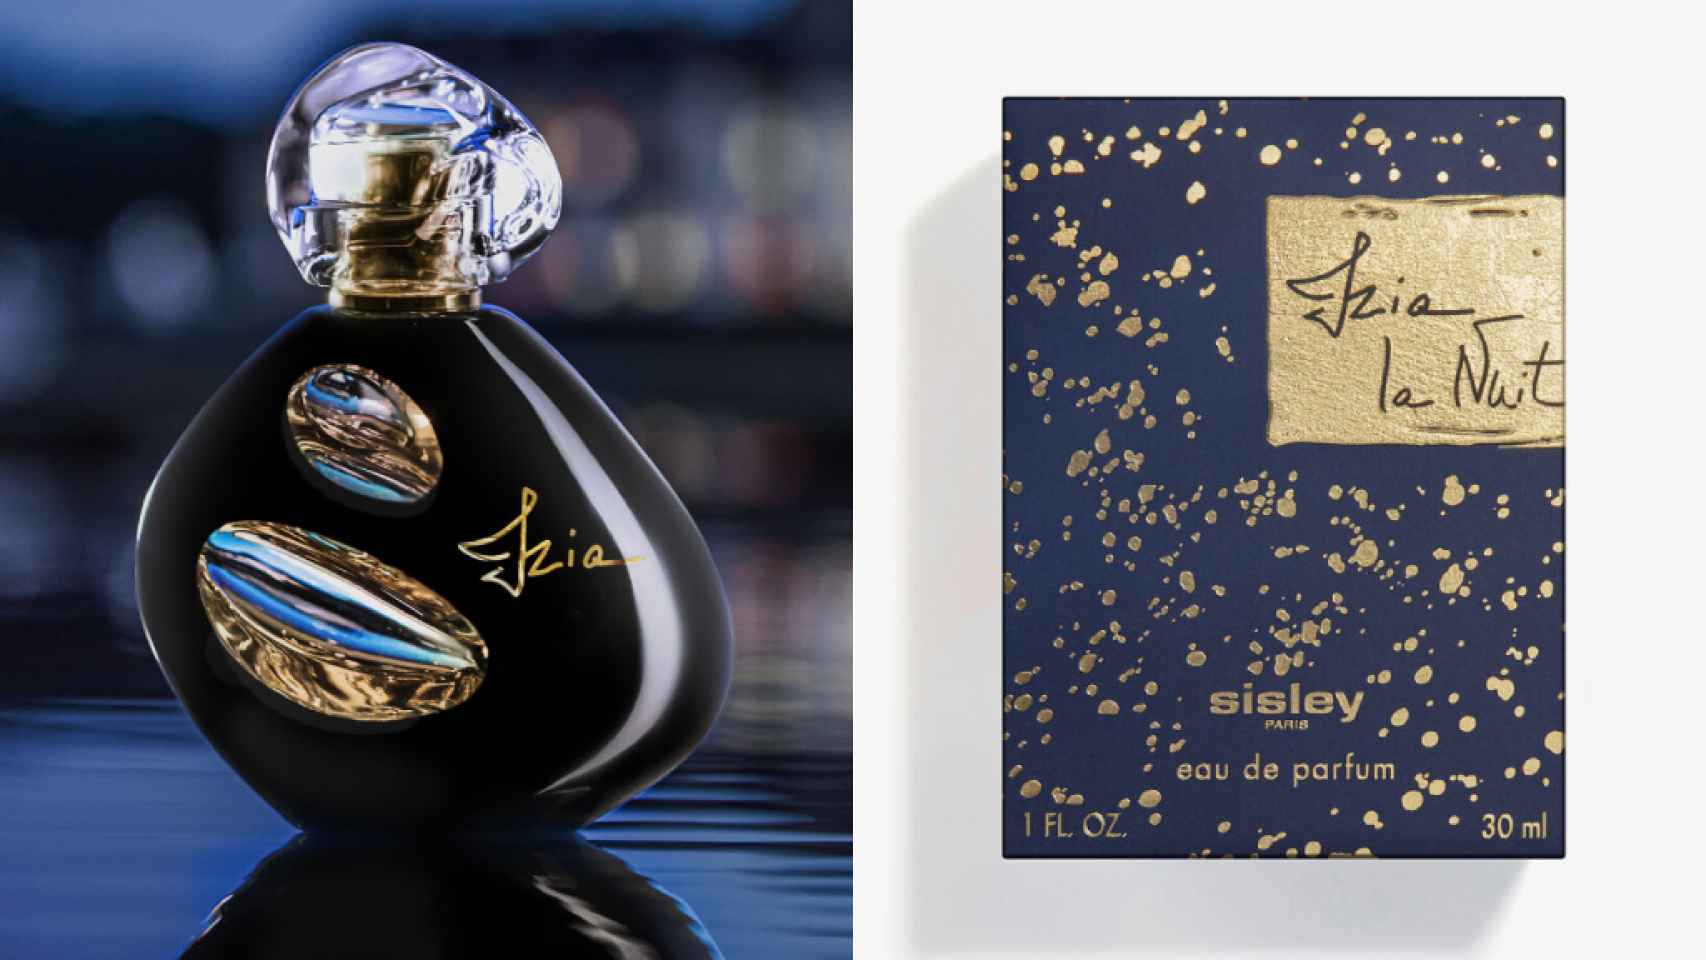 El perfume de Sisley que ha promocionado Lidia Bedman.